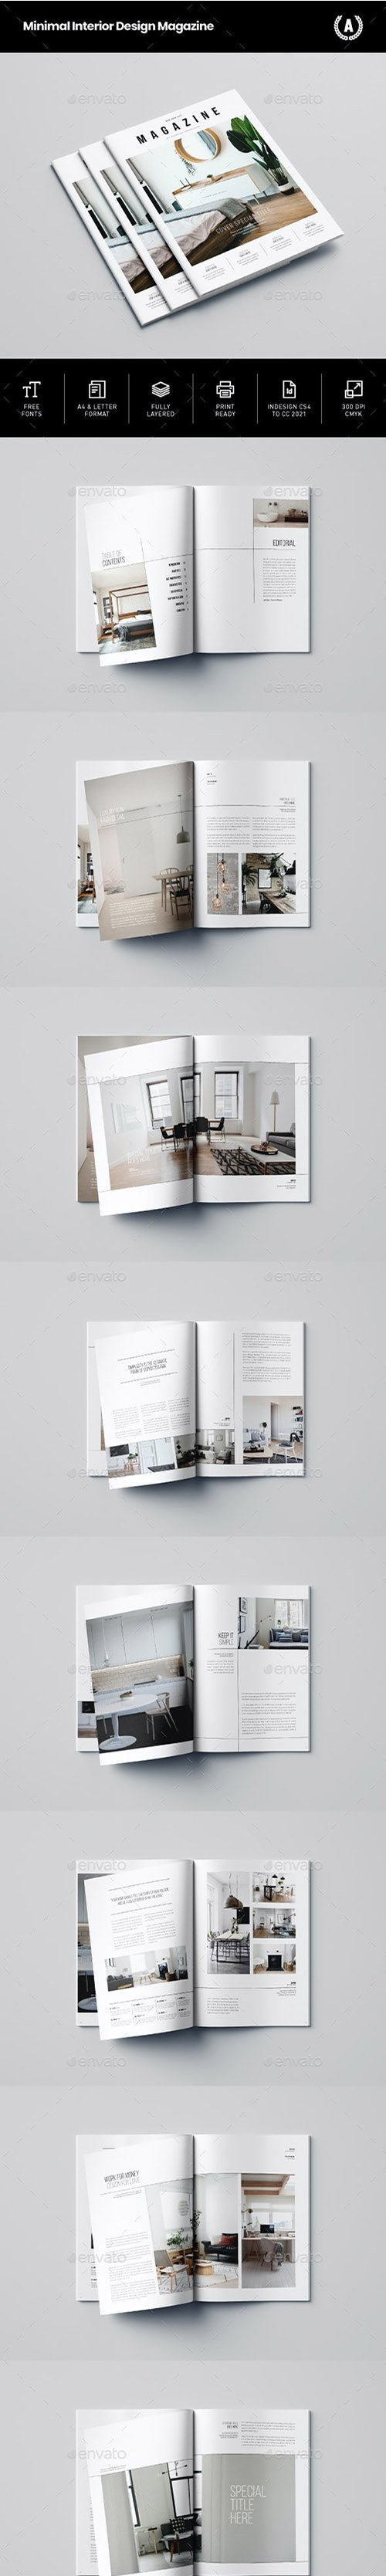 Minimal Interior Design Magazine